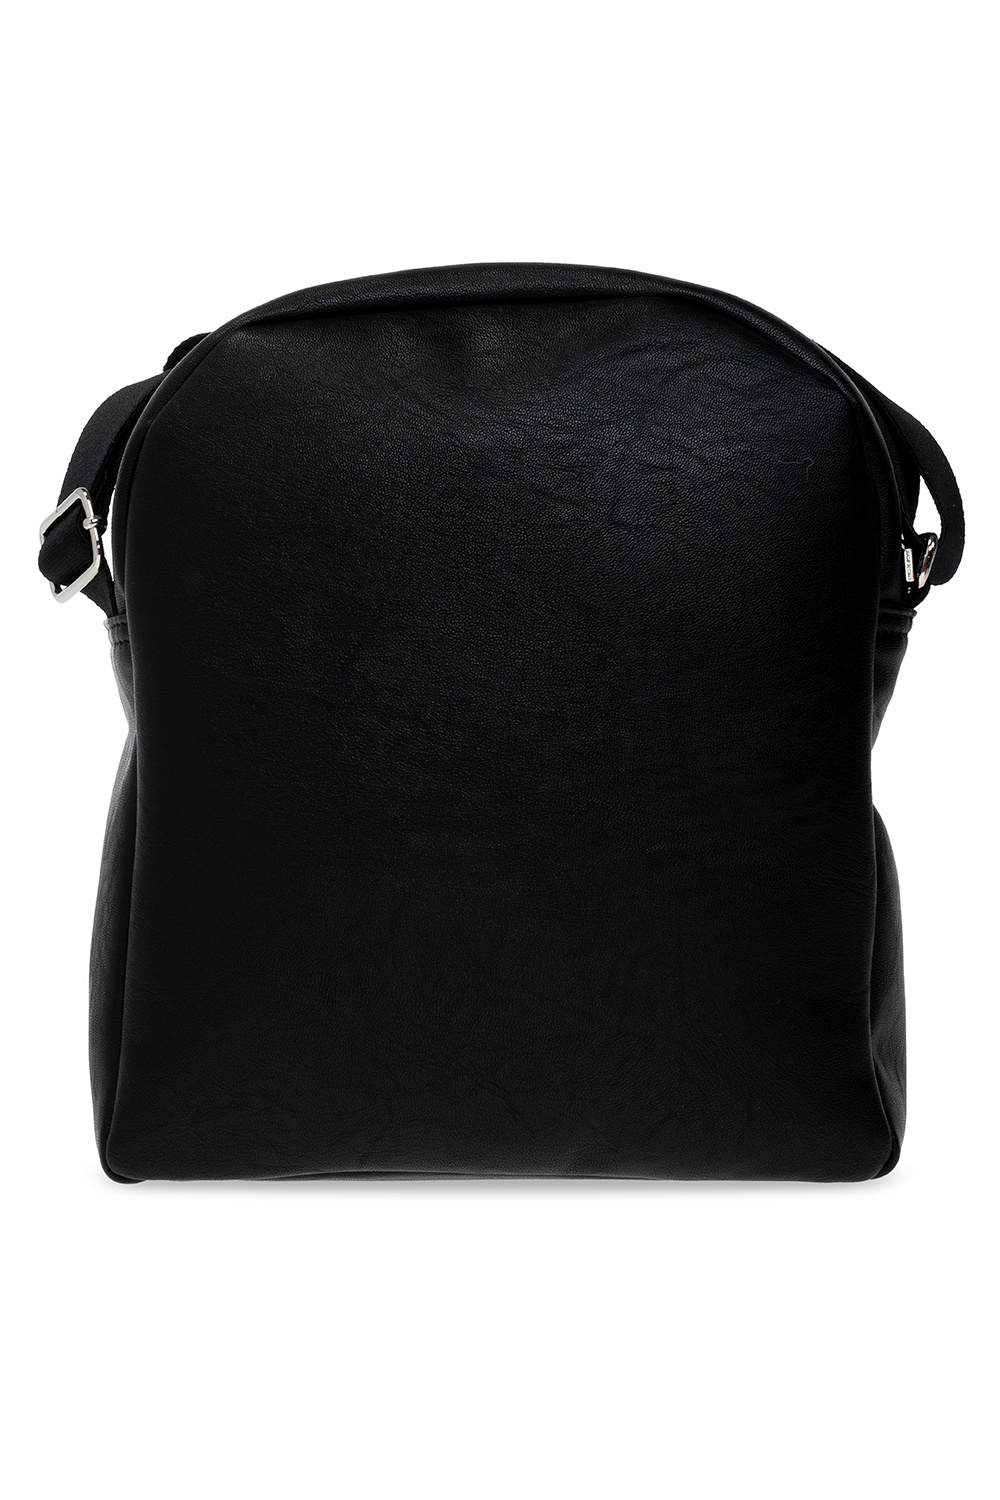 Dsquared2 ‘70’s Sport’ shoulder bag